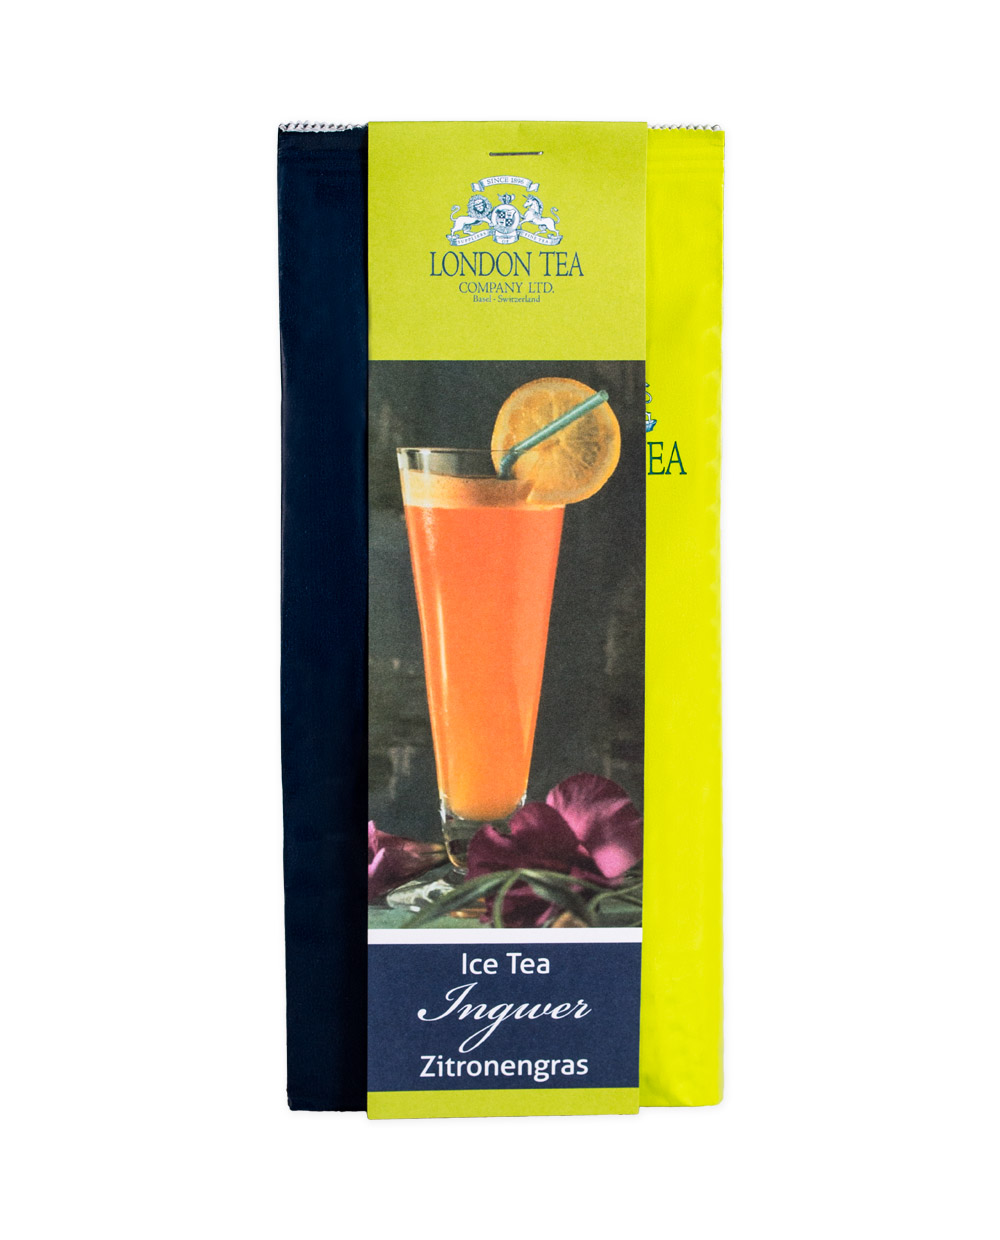 FineToDine - Welt der Gastgeber: Tee-Genuss: London Tea - Ingwer ...